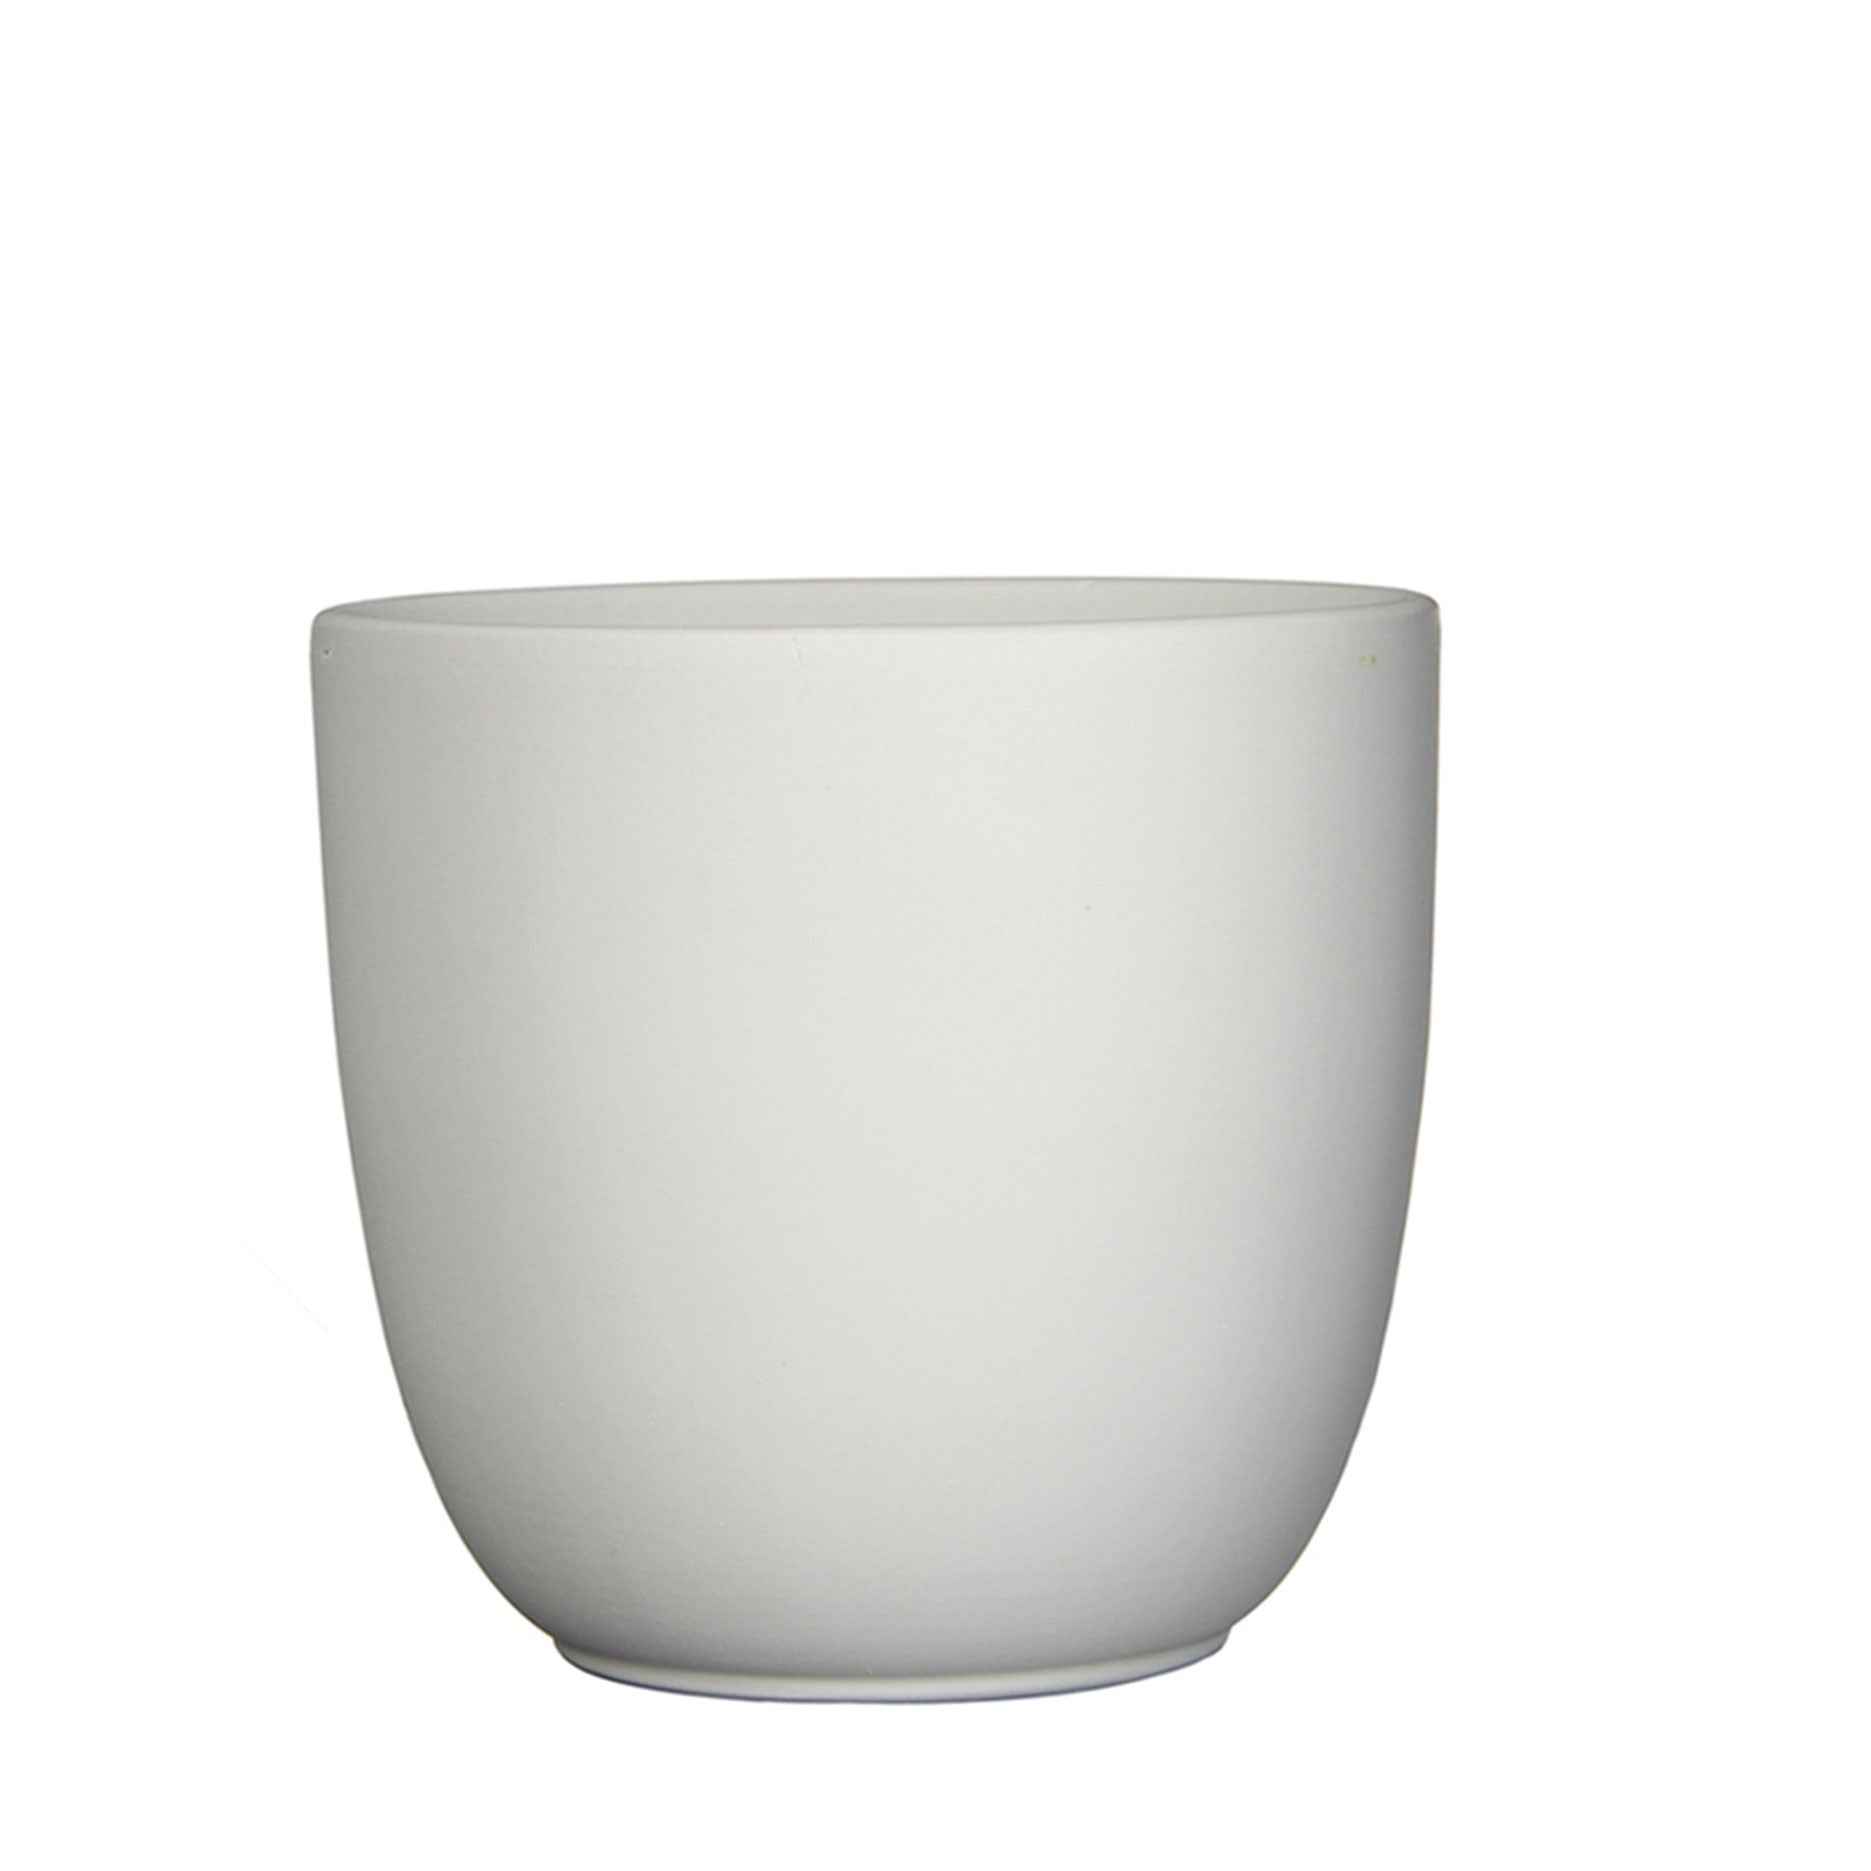 Mica pot de fleurs Lago rond blanc mat - Pot pour l'intérieur - Pots de fleurs en céramique et terre cuite